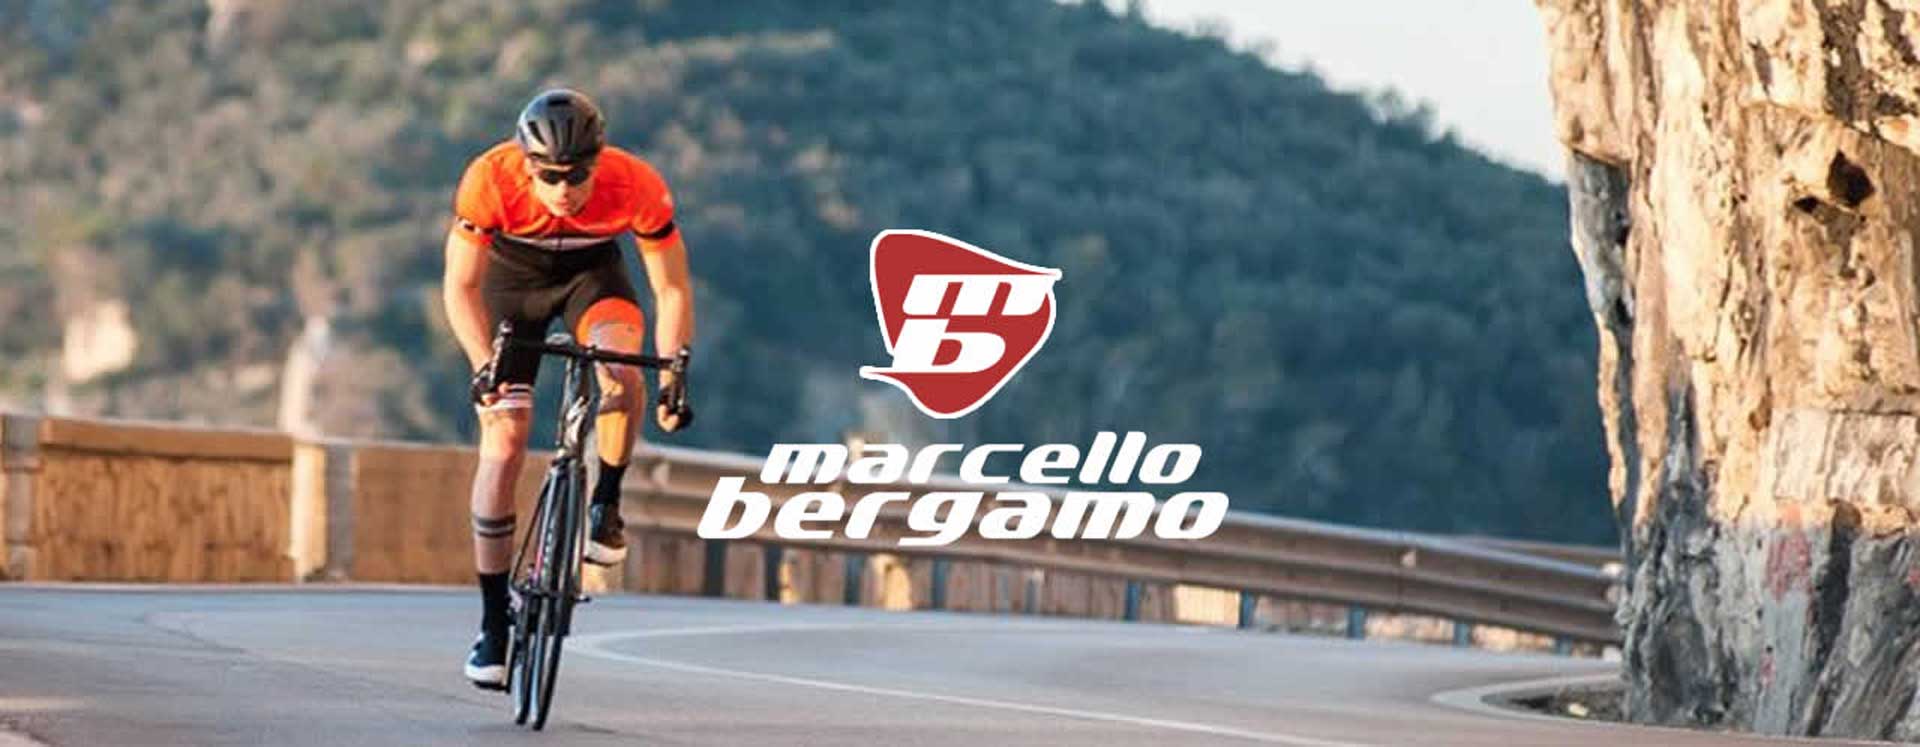 Sito web ecommerce abbigliamento ciclismo Marcello Bergamo - Case history Unique